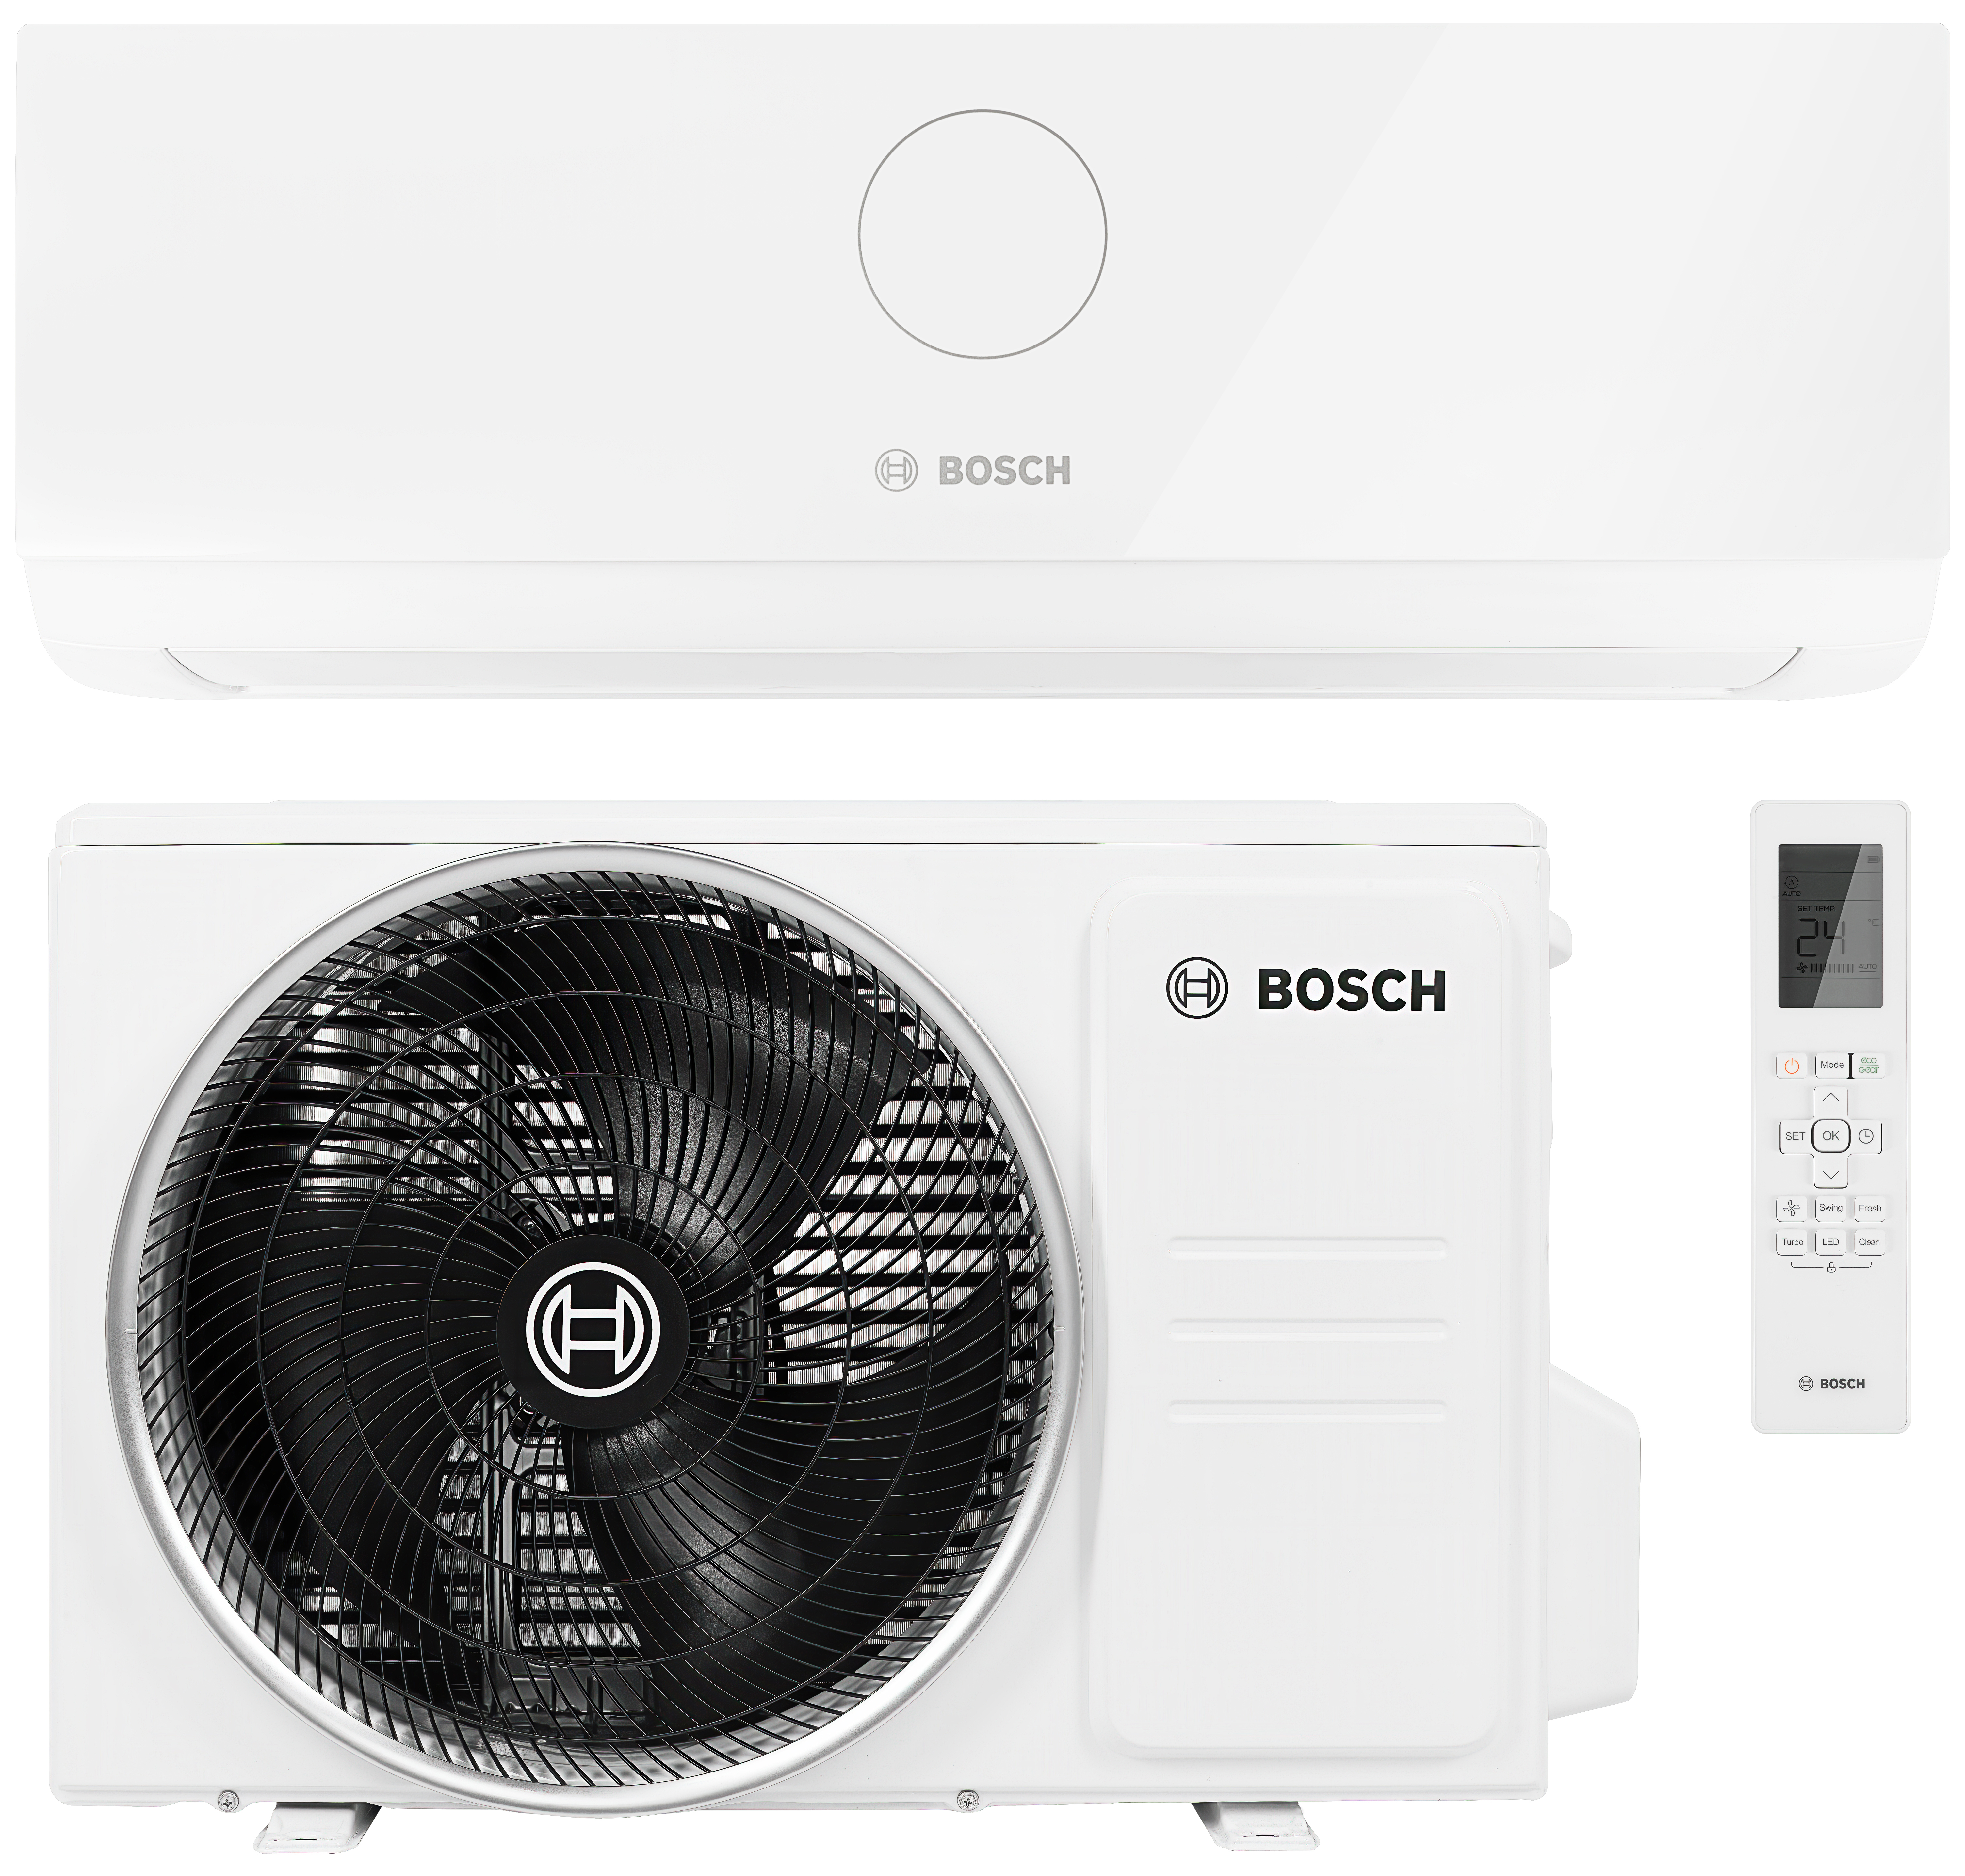 Bosch Climate CL3000i 35 E